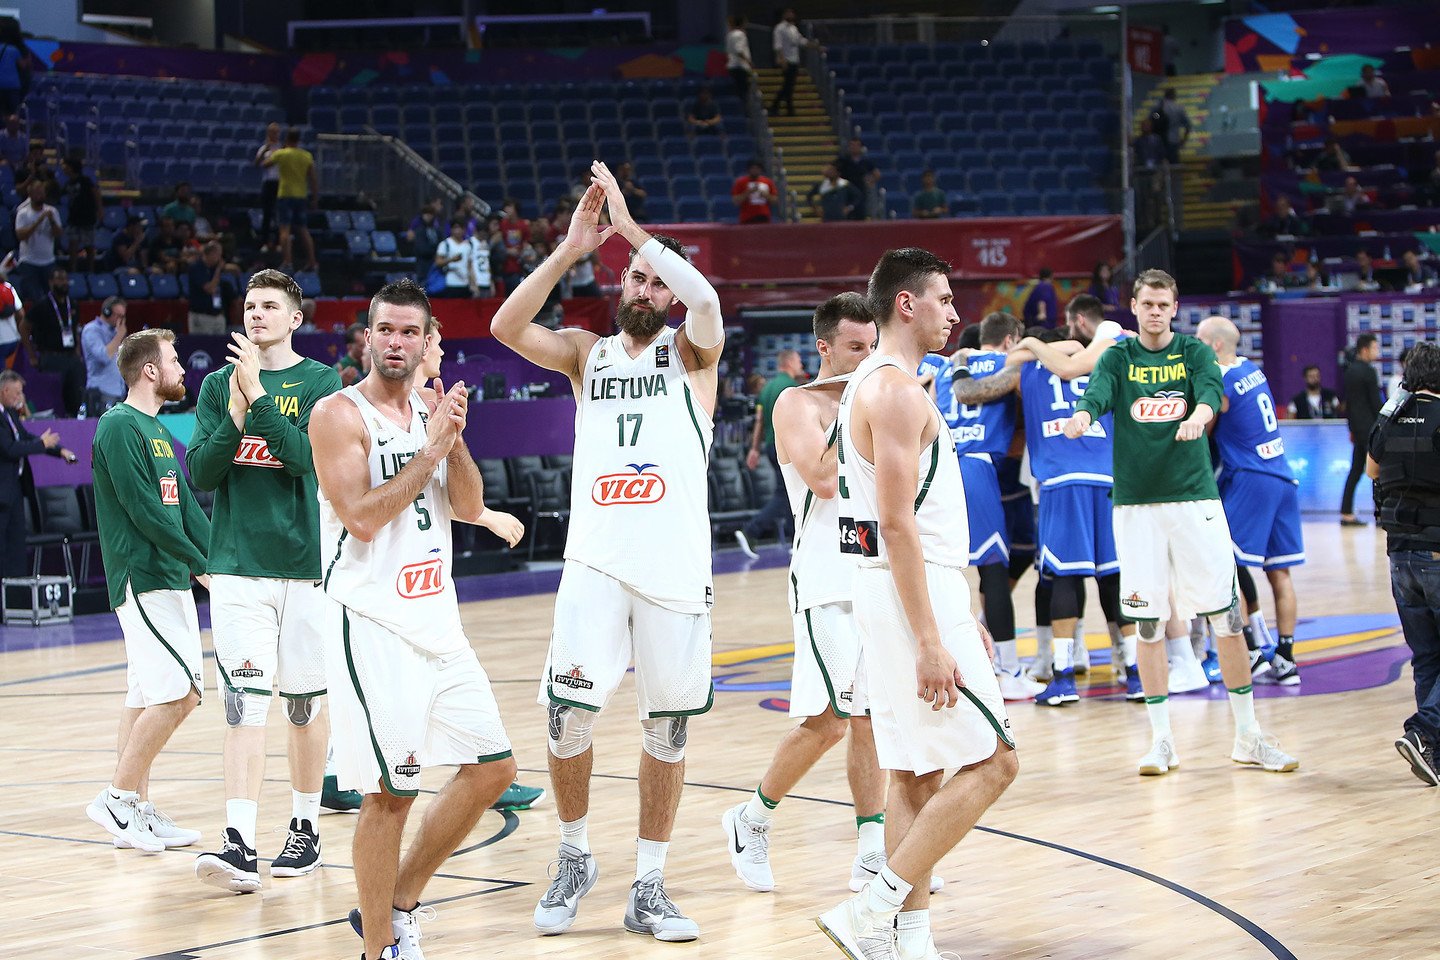  Lietuvos krepšininkai vos tik baigę čempionatą išsukbėjo ruoštis klubiniam sezonui<br> G.Šiupario nuotr.